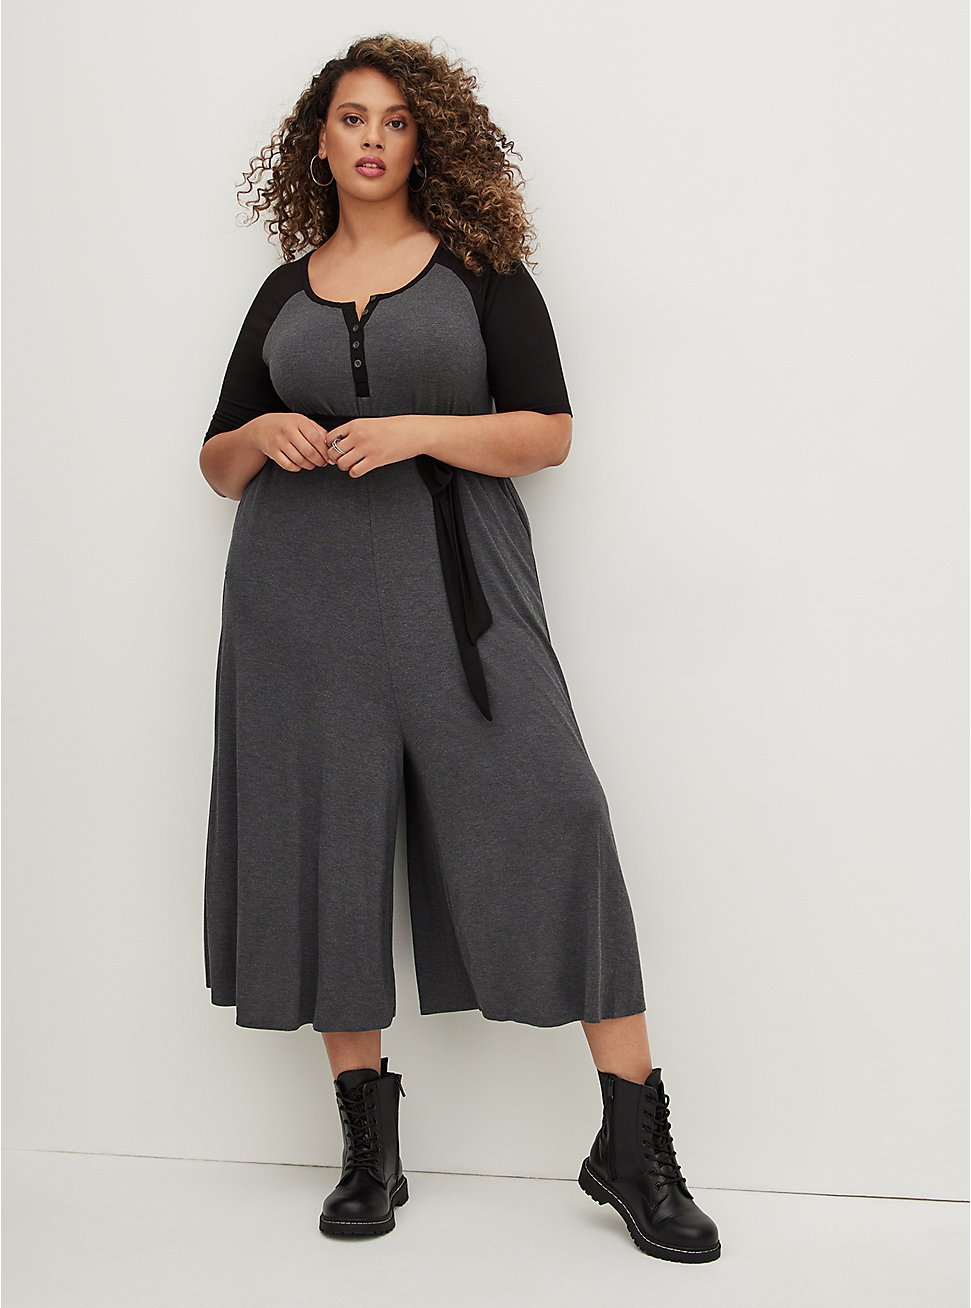 Raglan Culotte Jumpsuit - Super Soft Black & Grey, CHARCOAL  BLACK, hi-res